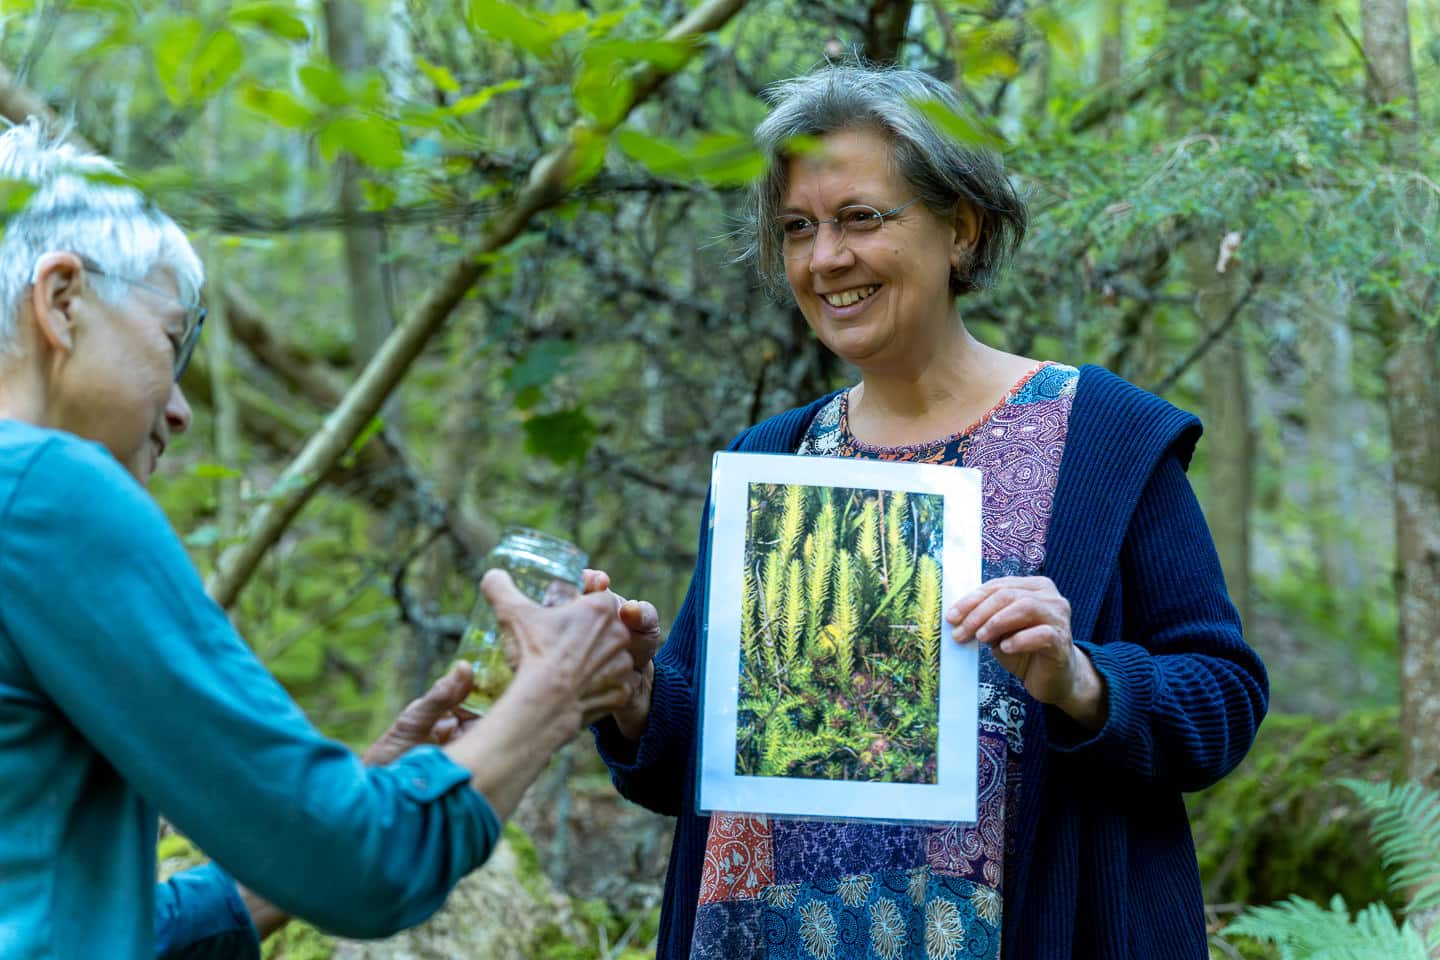 Eine Frau hält ein Bild mit einer Pflanze und zeigt einer anderen Frau etwas in einem Schraubglas